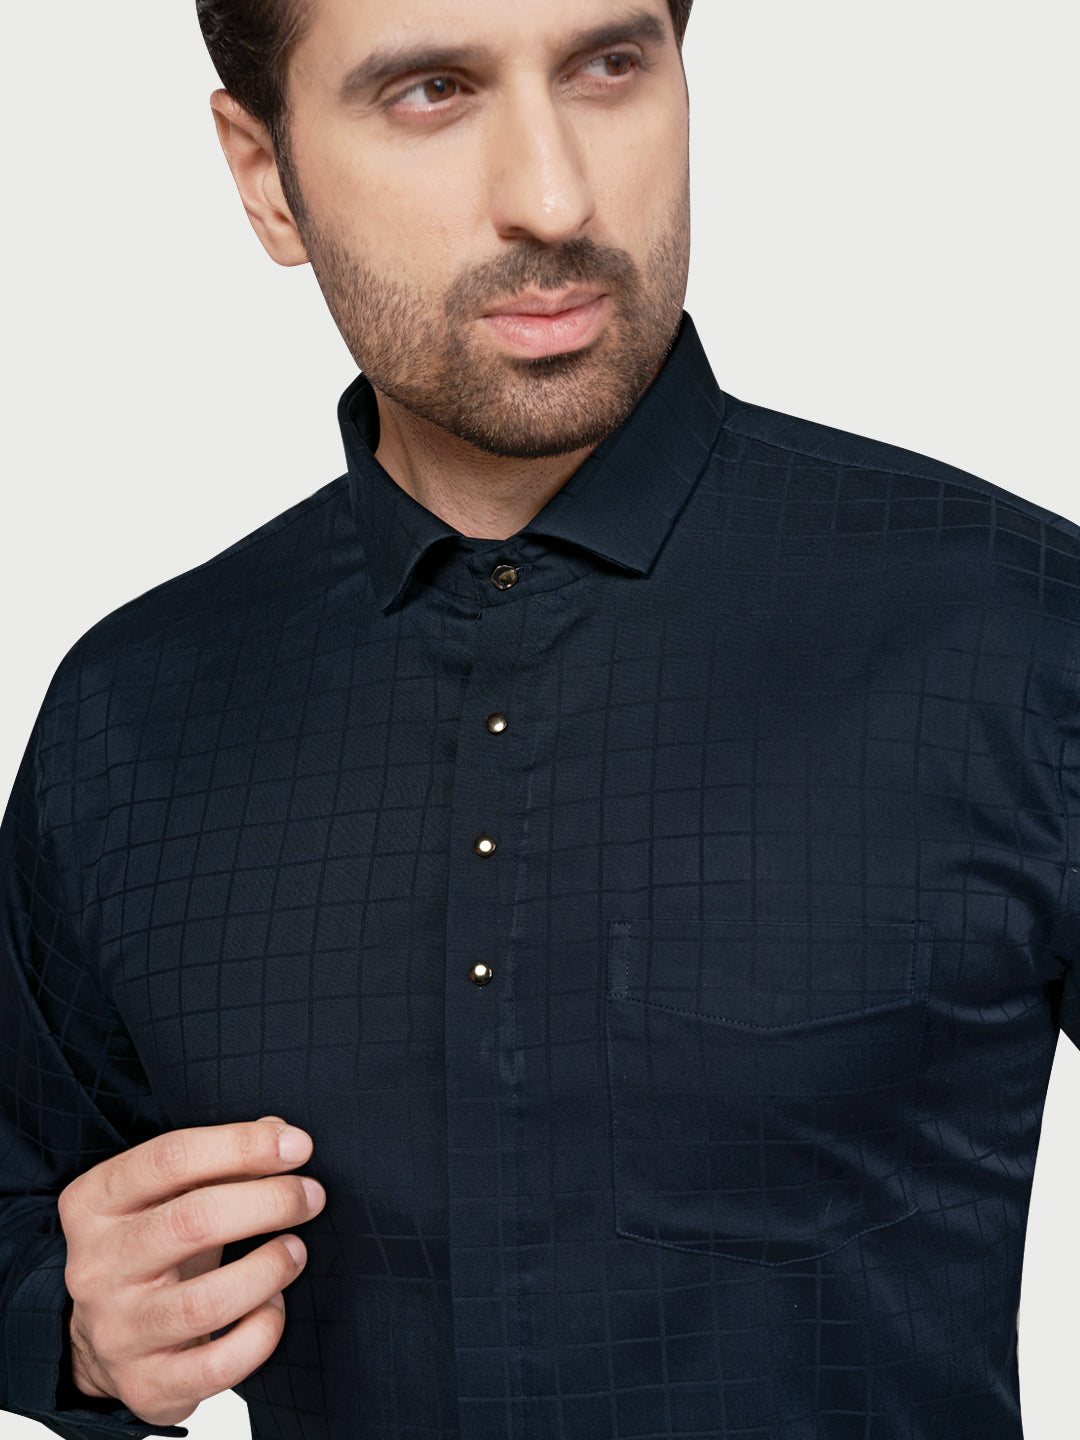 Black & White Designer Shimmer Shirt Navy Blue